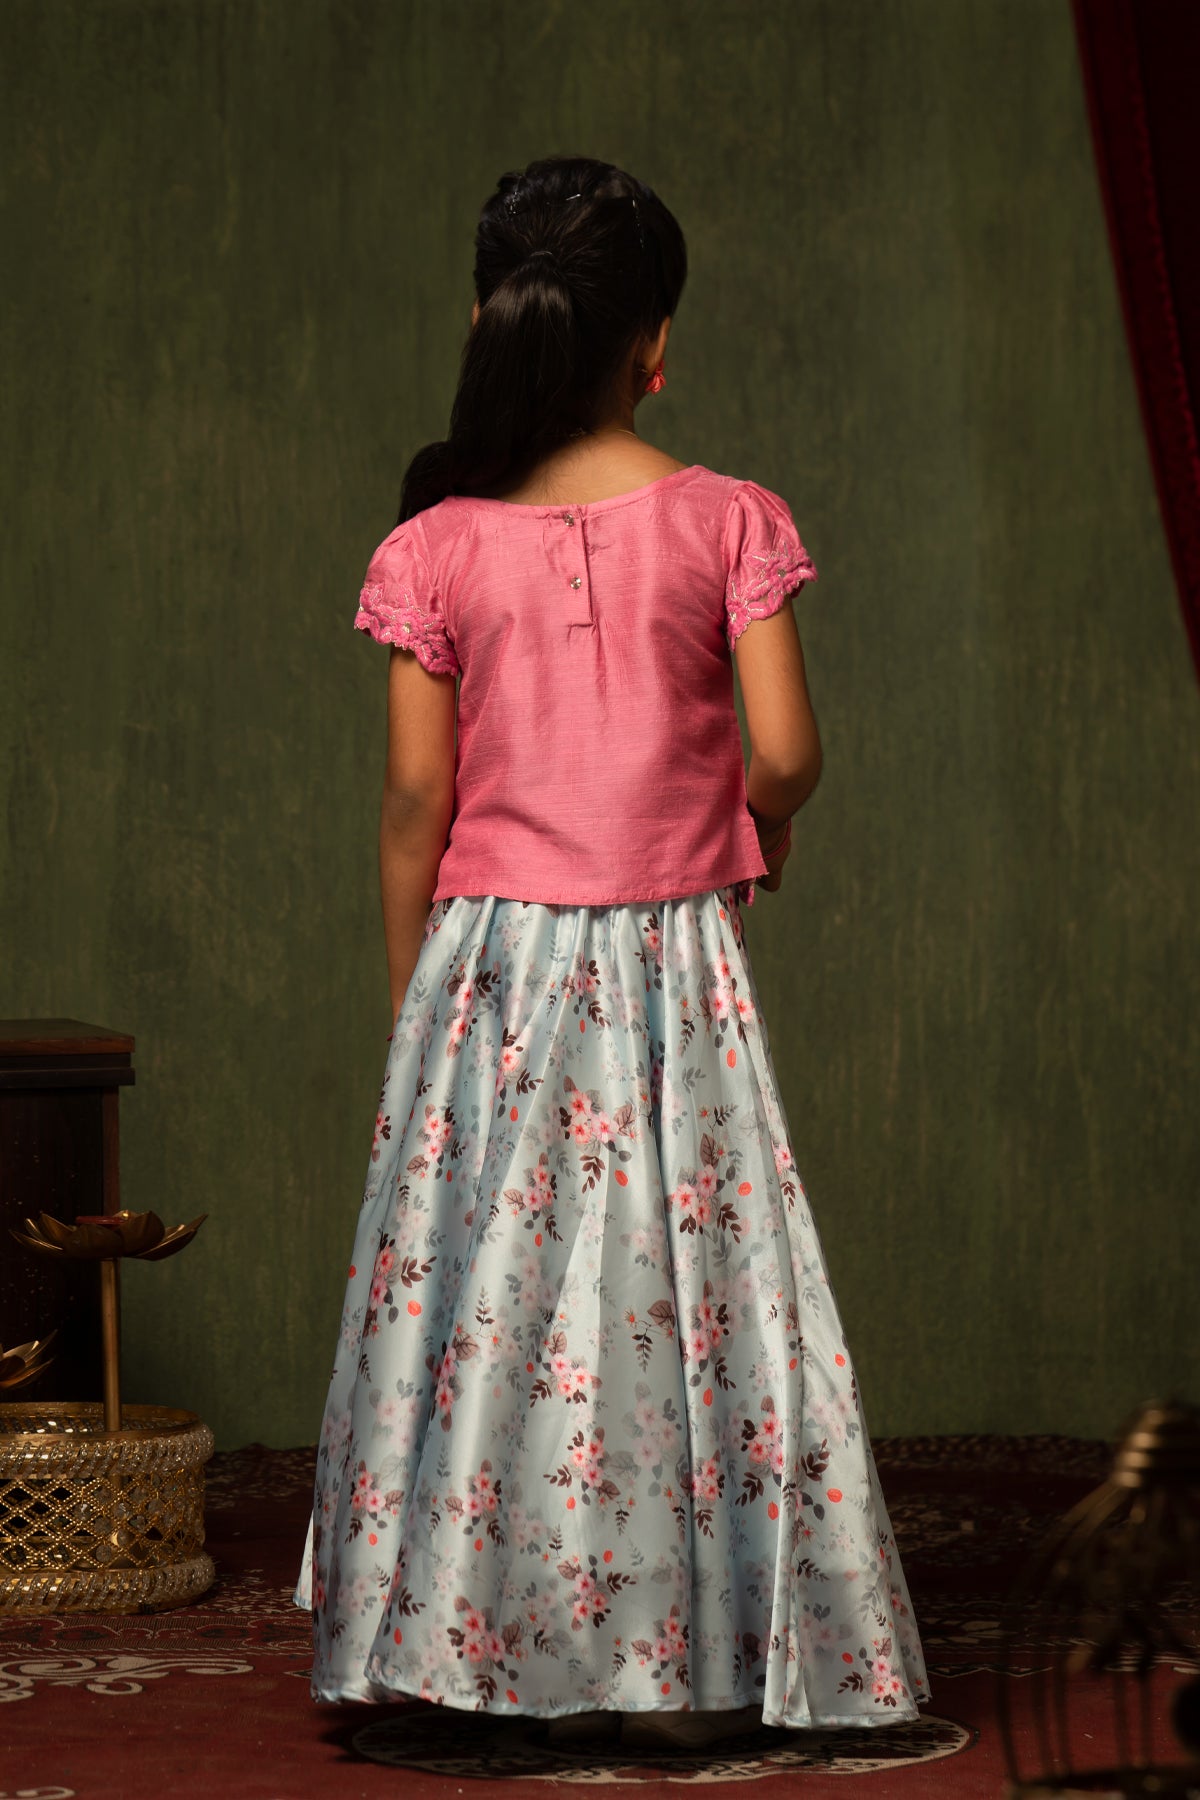 Floral Motif Embroidered Top & Digital Printed Skirt Set - Pink & Blue